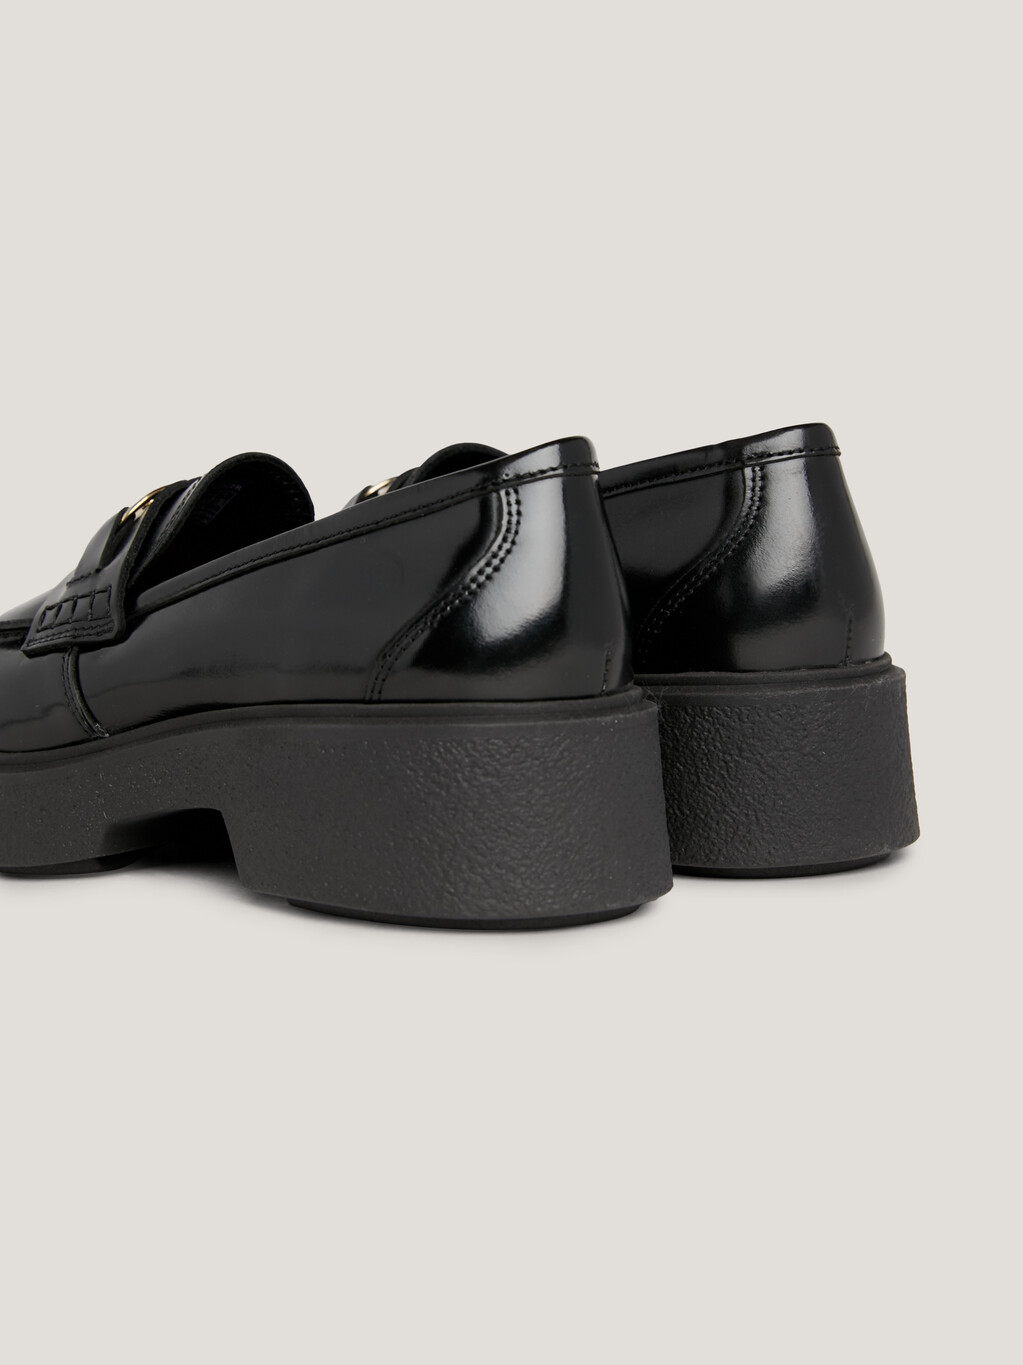 TH Monogram Leather Flatform Loafers, Black, hi-res